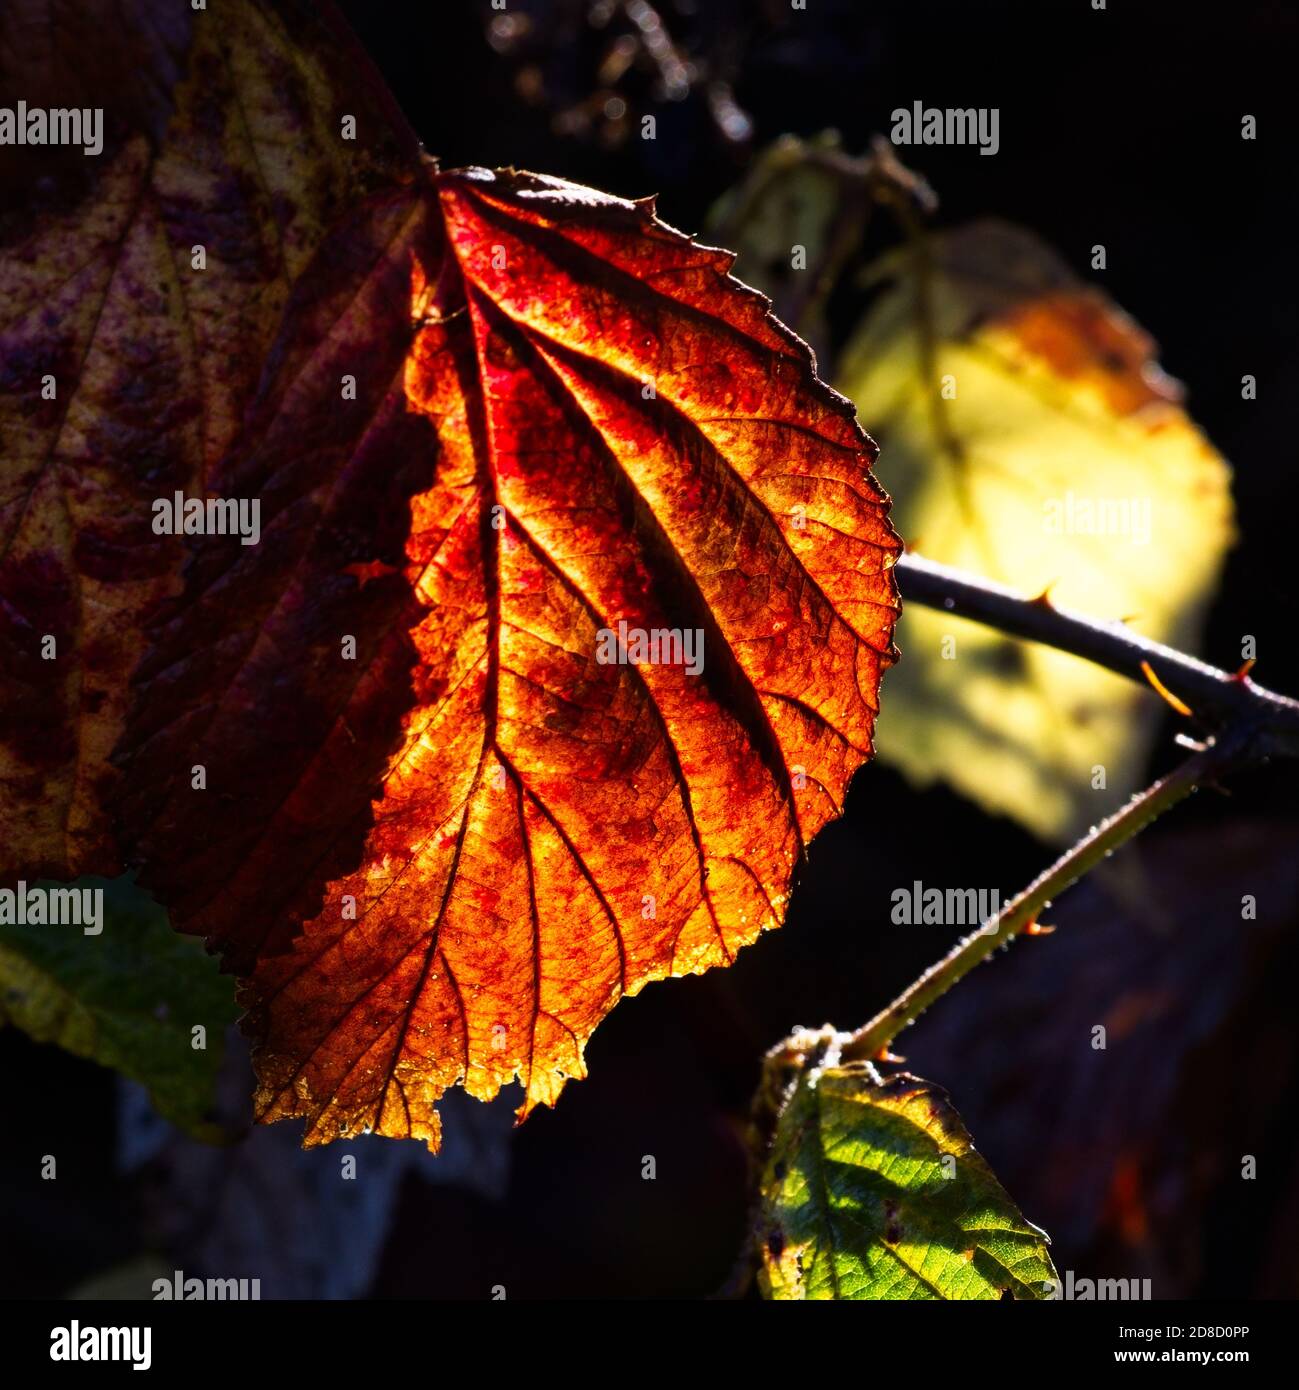 Brambleberry foliage stock photo. Image of luscious, mellow - 6376174